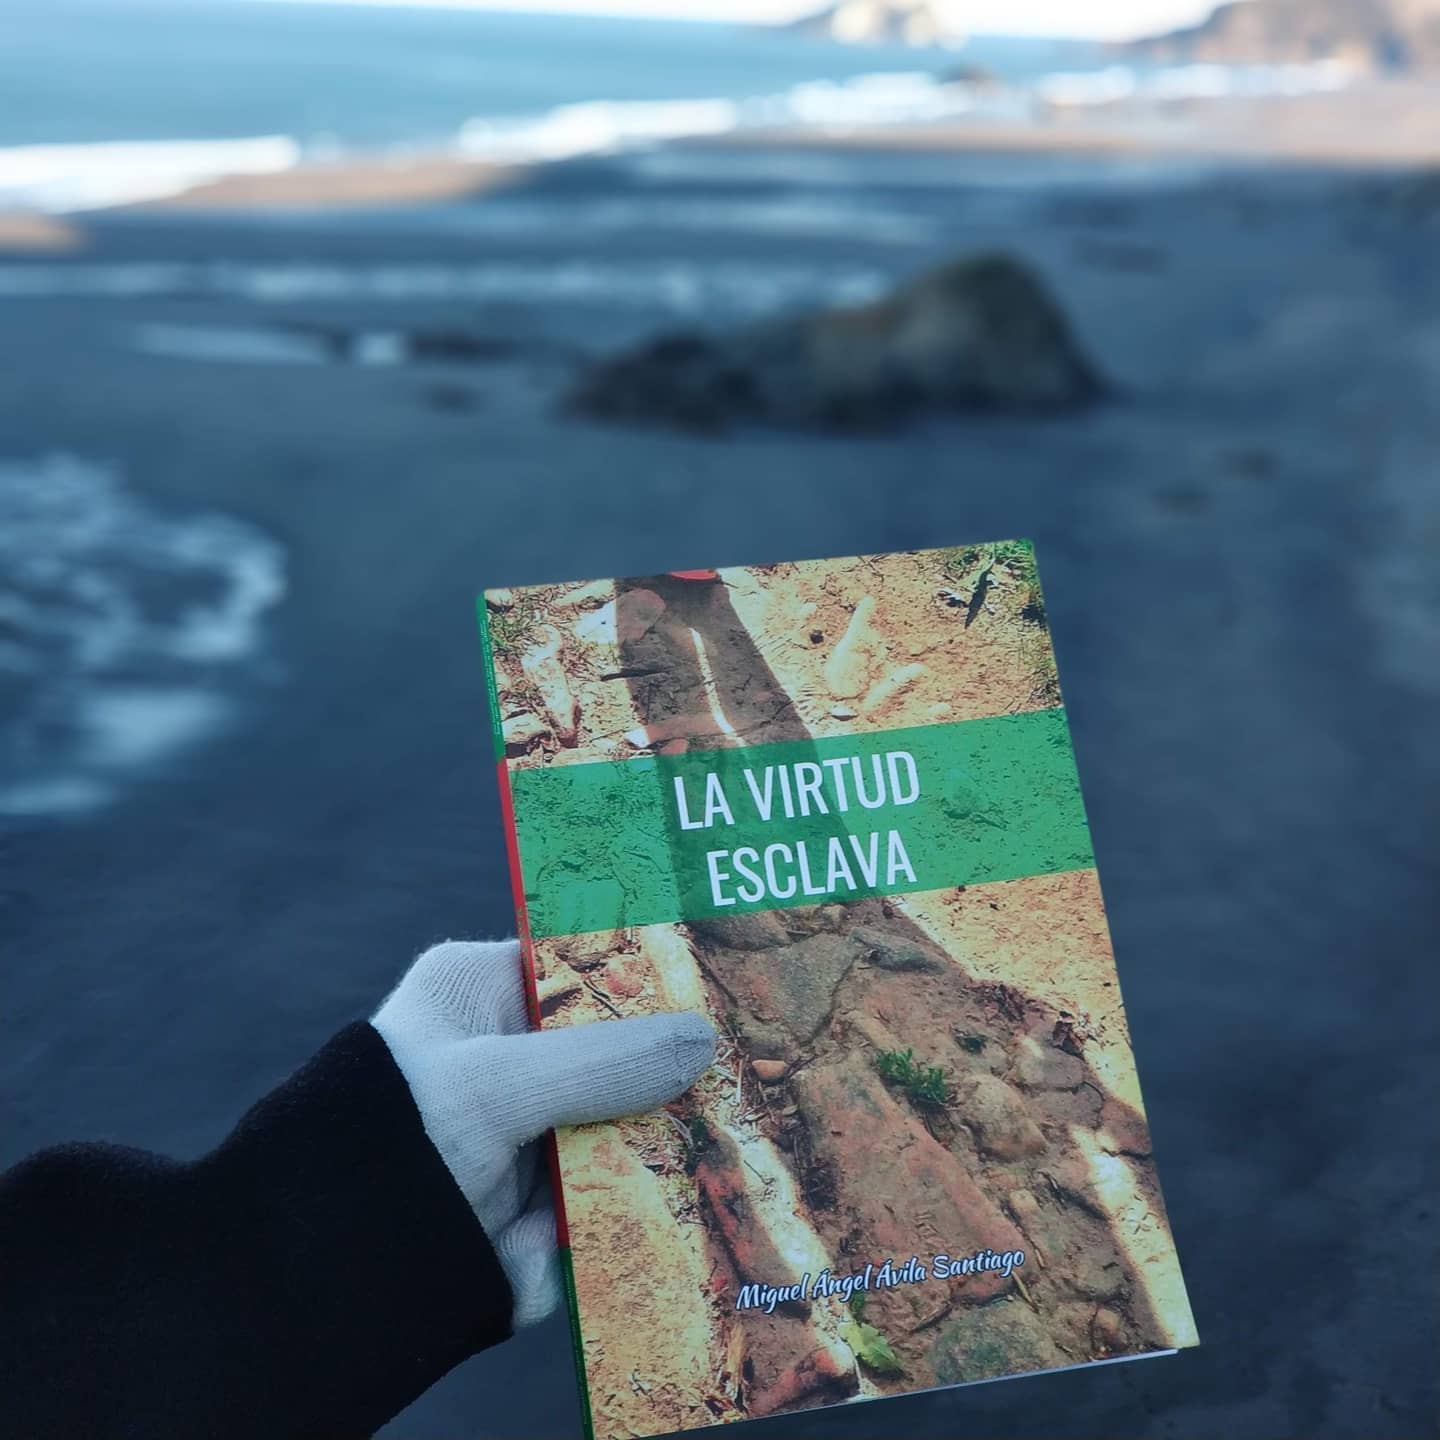 Charlamos con Miguel Ángel Ávila, autor de la obra “La virtud esclava, el cual nos cuenta palmo a palmo un poquito sobre su obra.